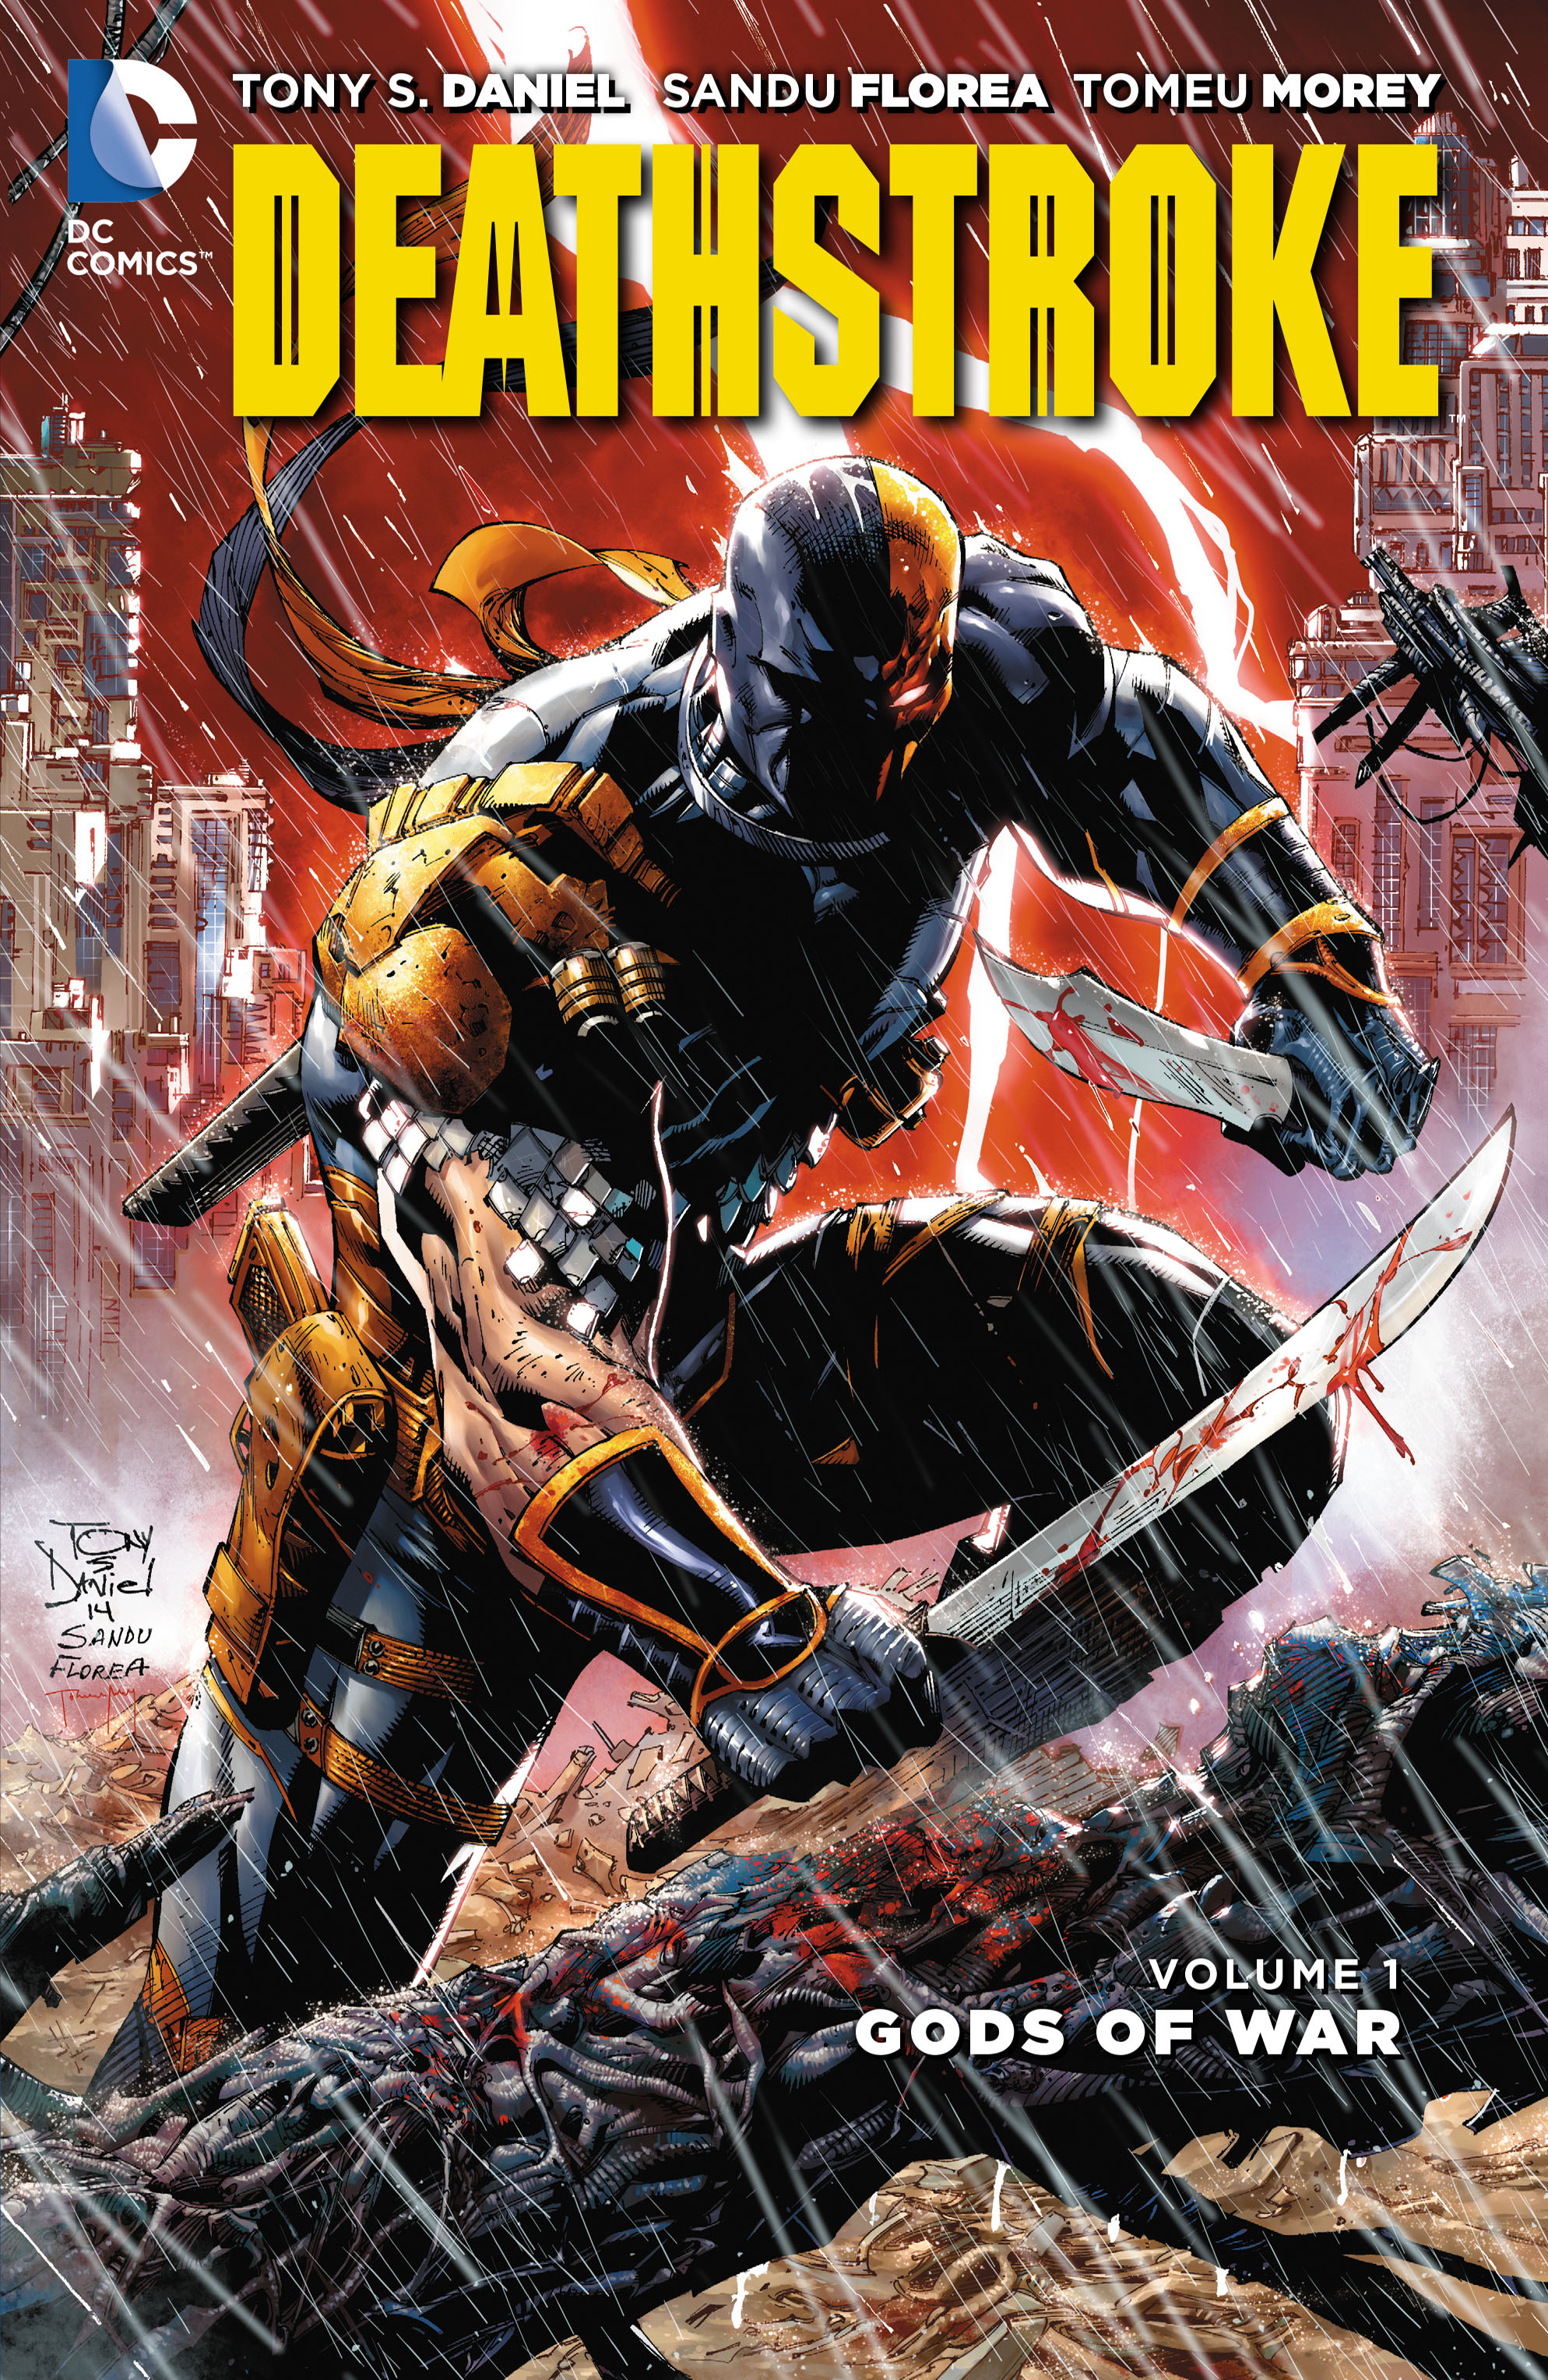 Read online Deathstroke: Gods of War comic -  Issue # TPB - 1